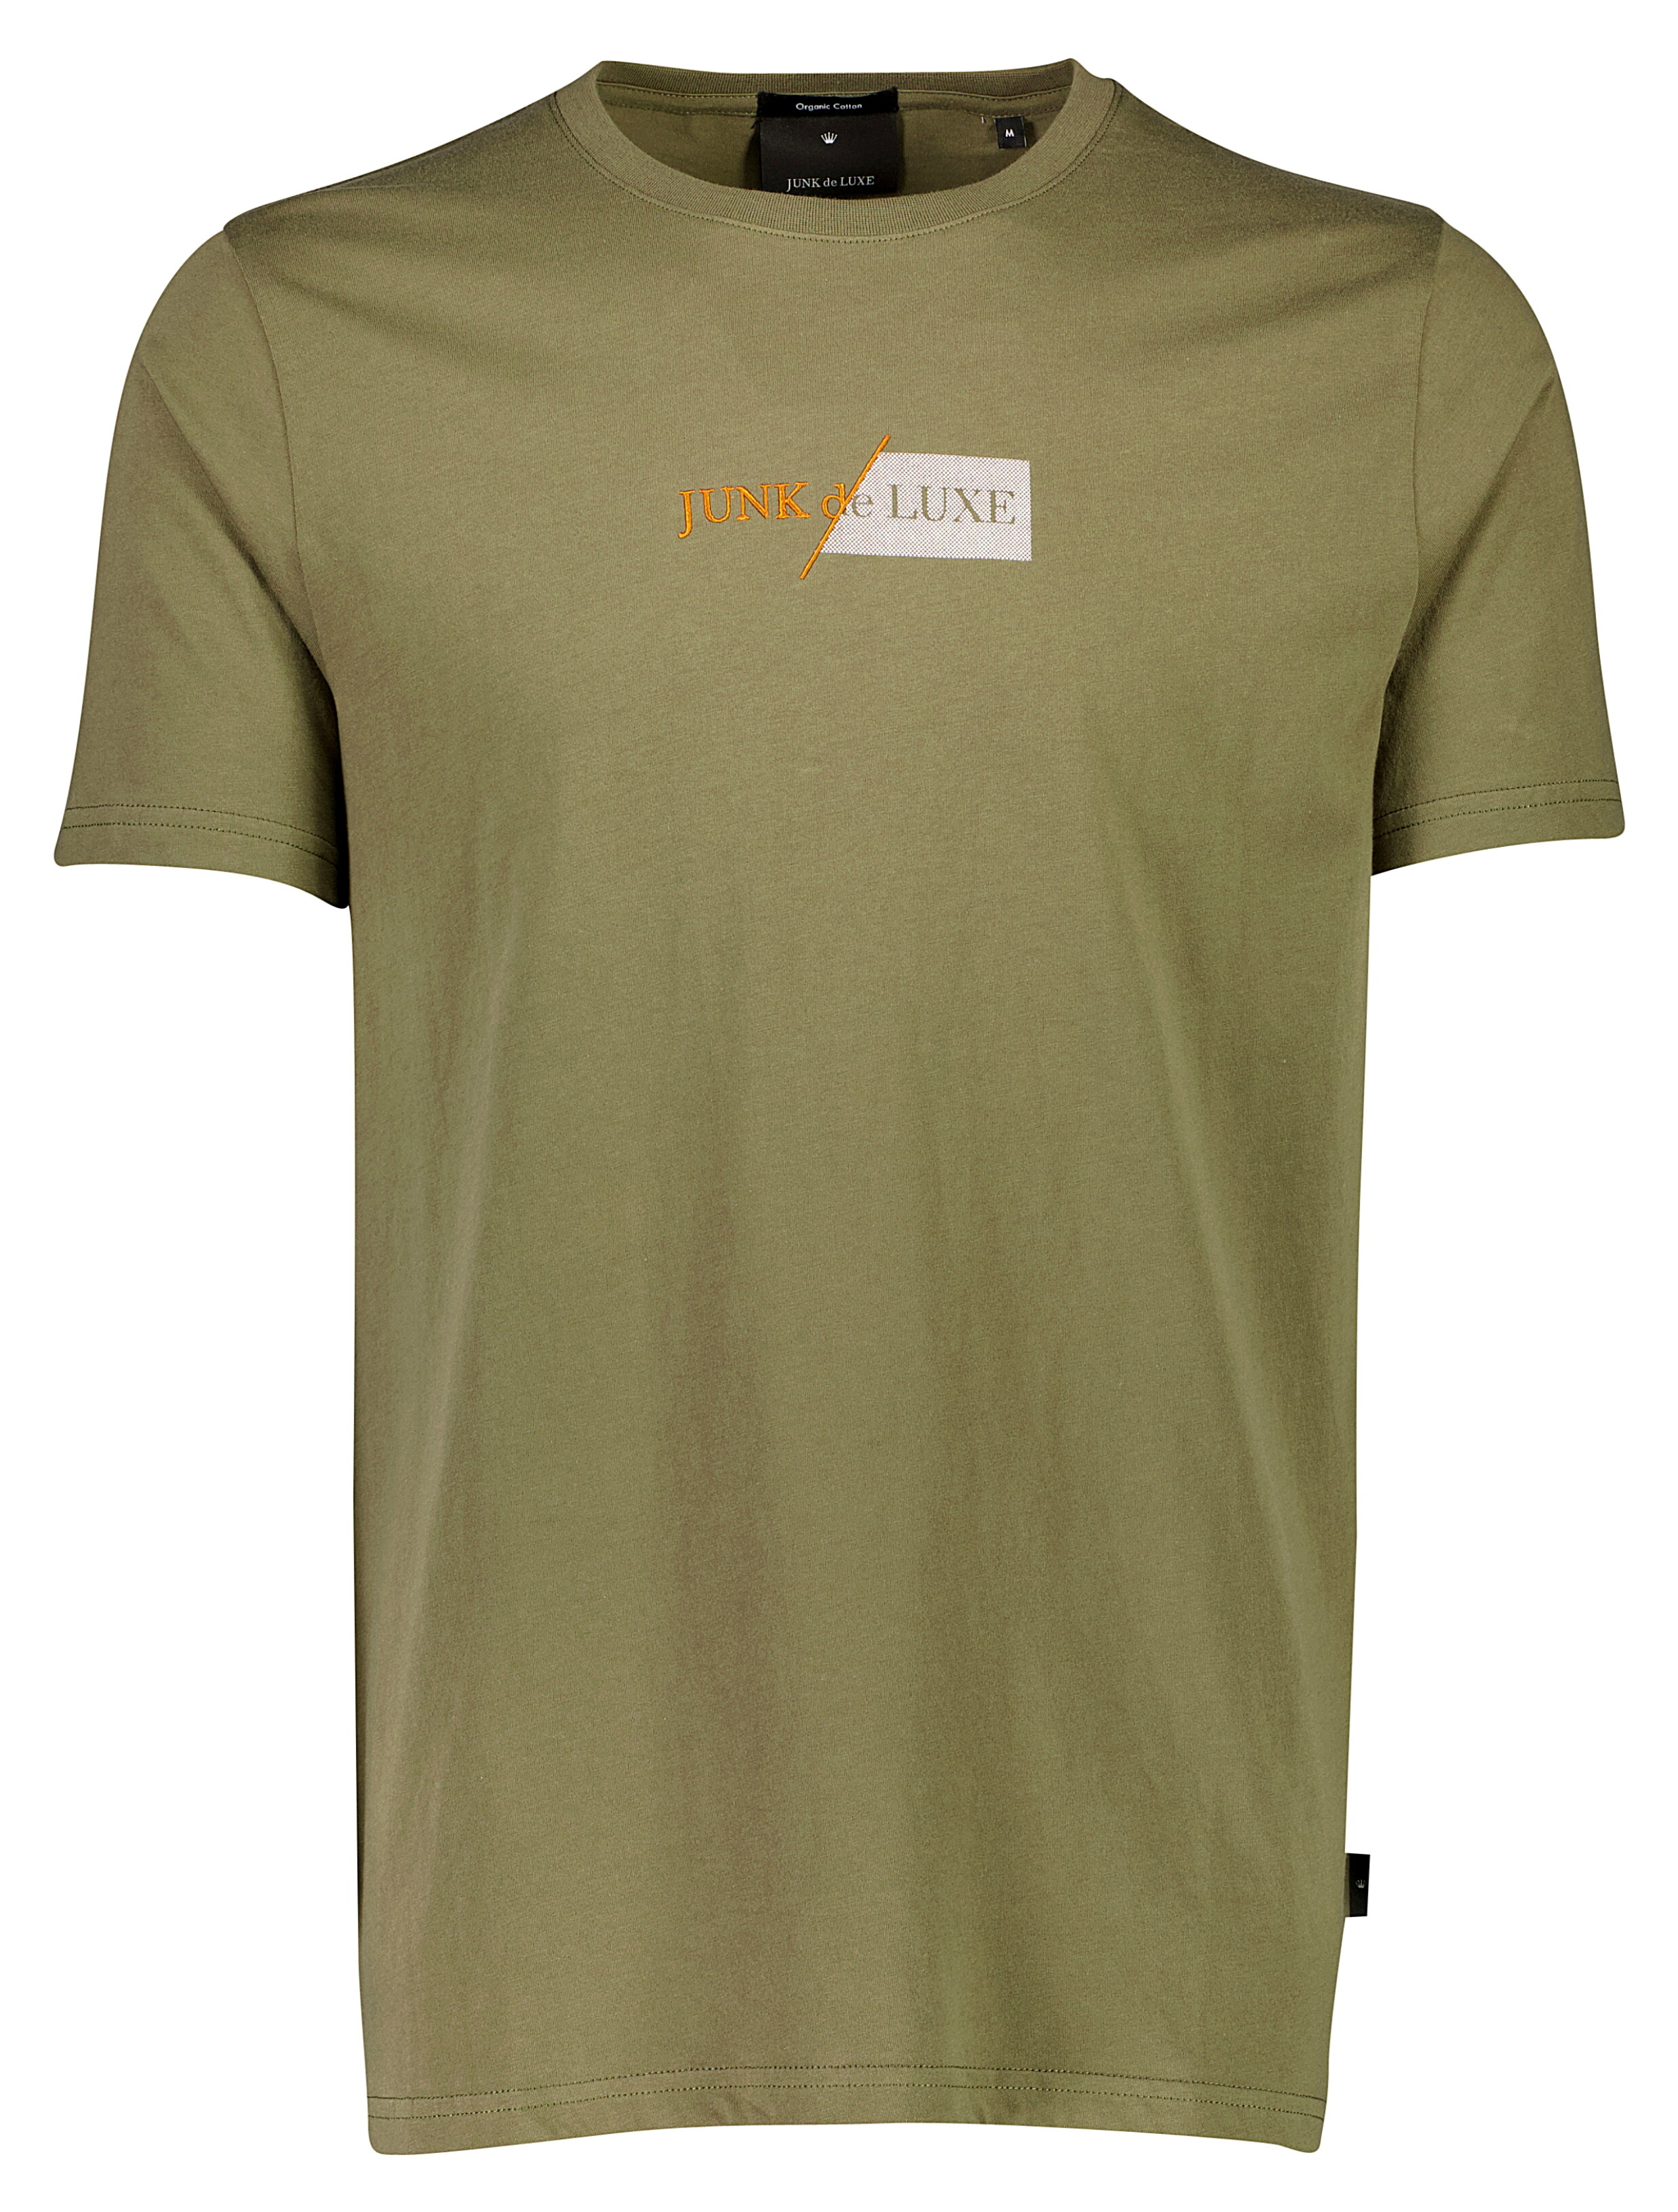 Junk de Luxe T-shirt grøn / army